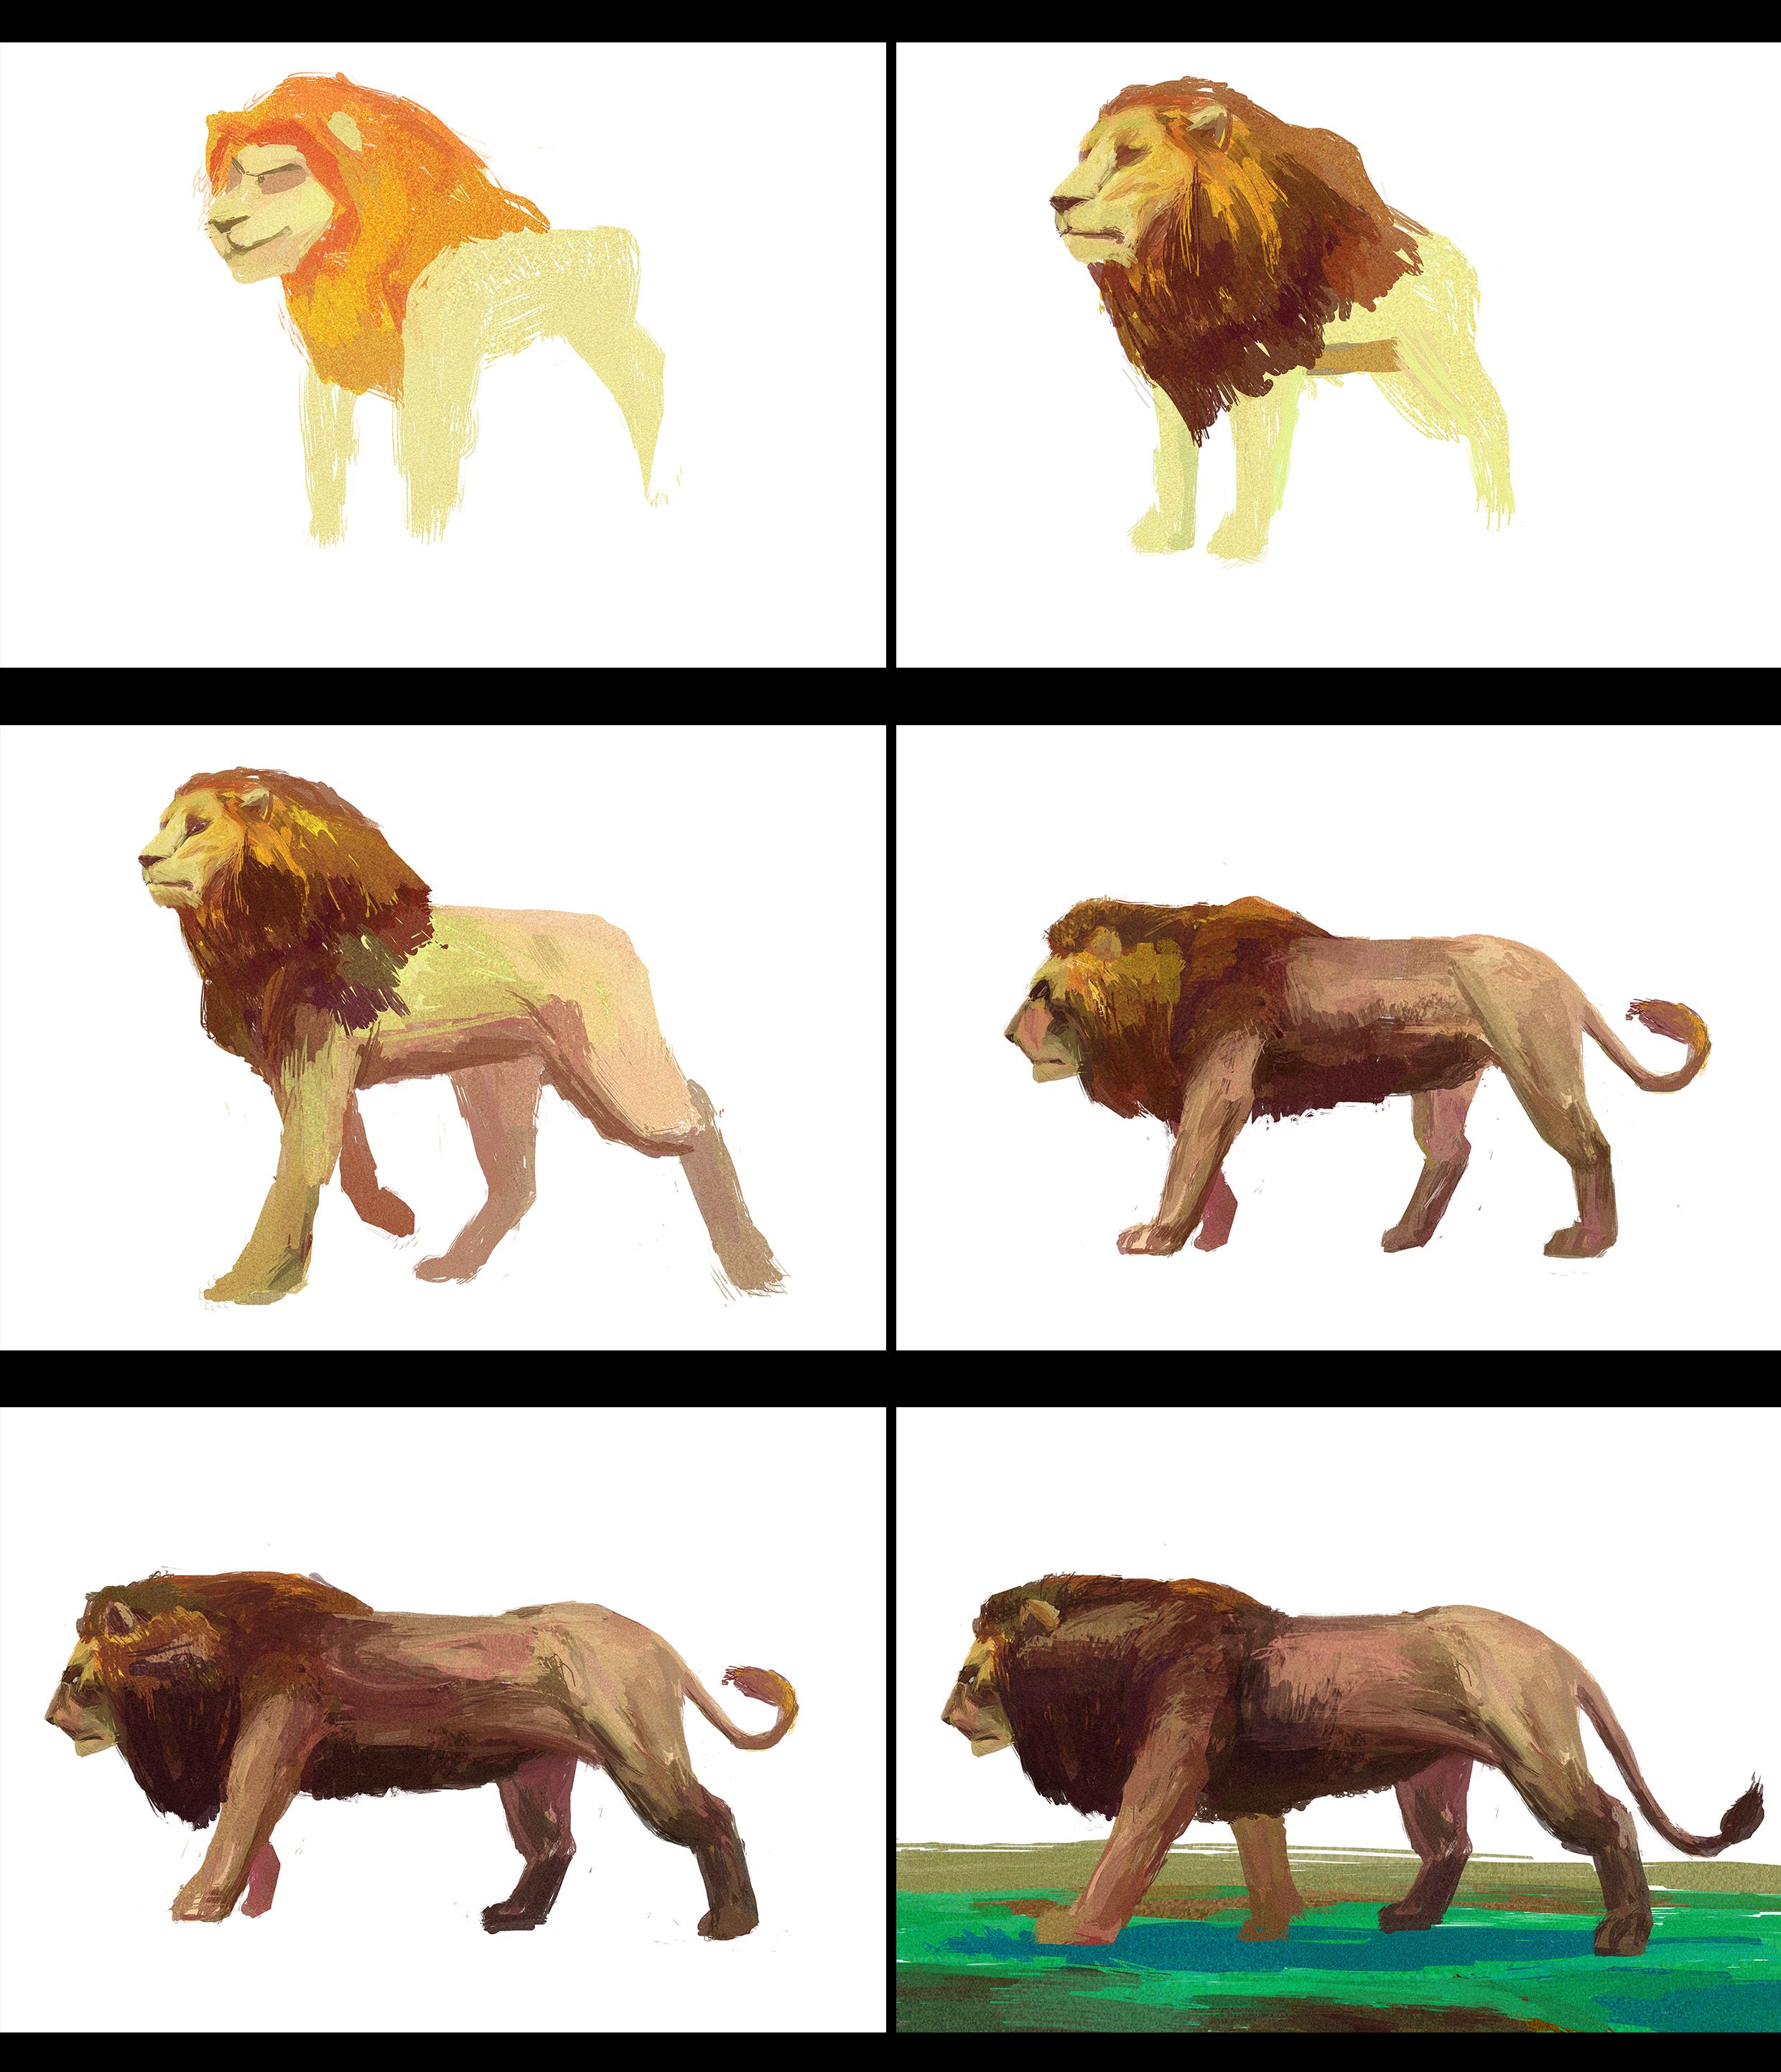 Lion2c for progress1.jpg